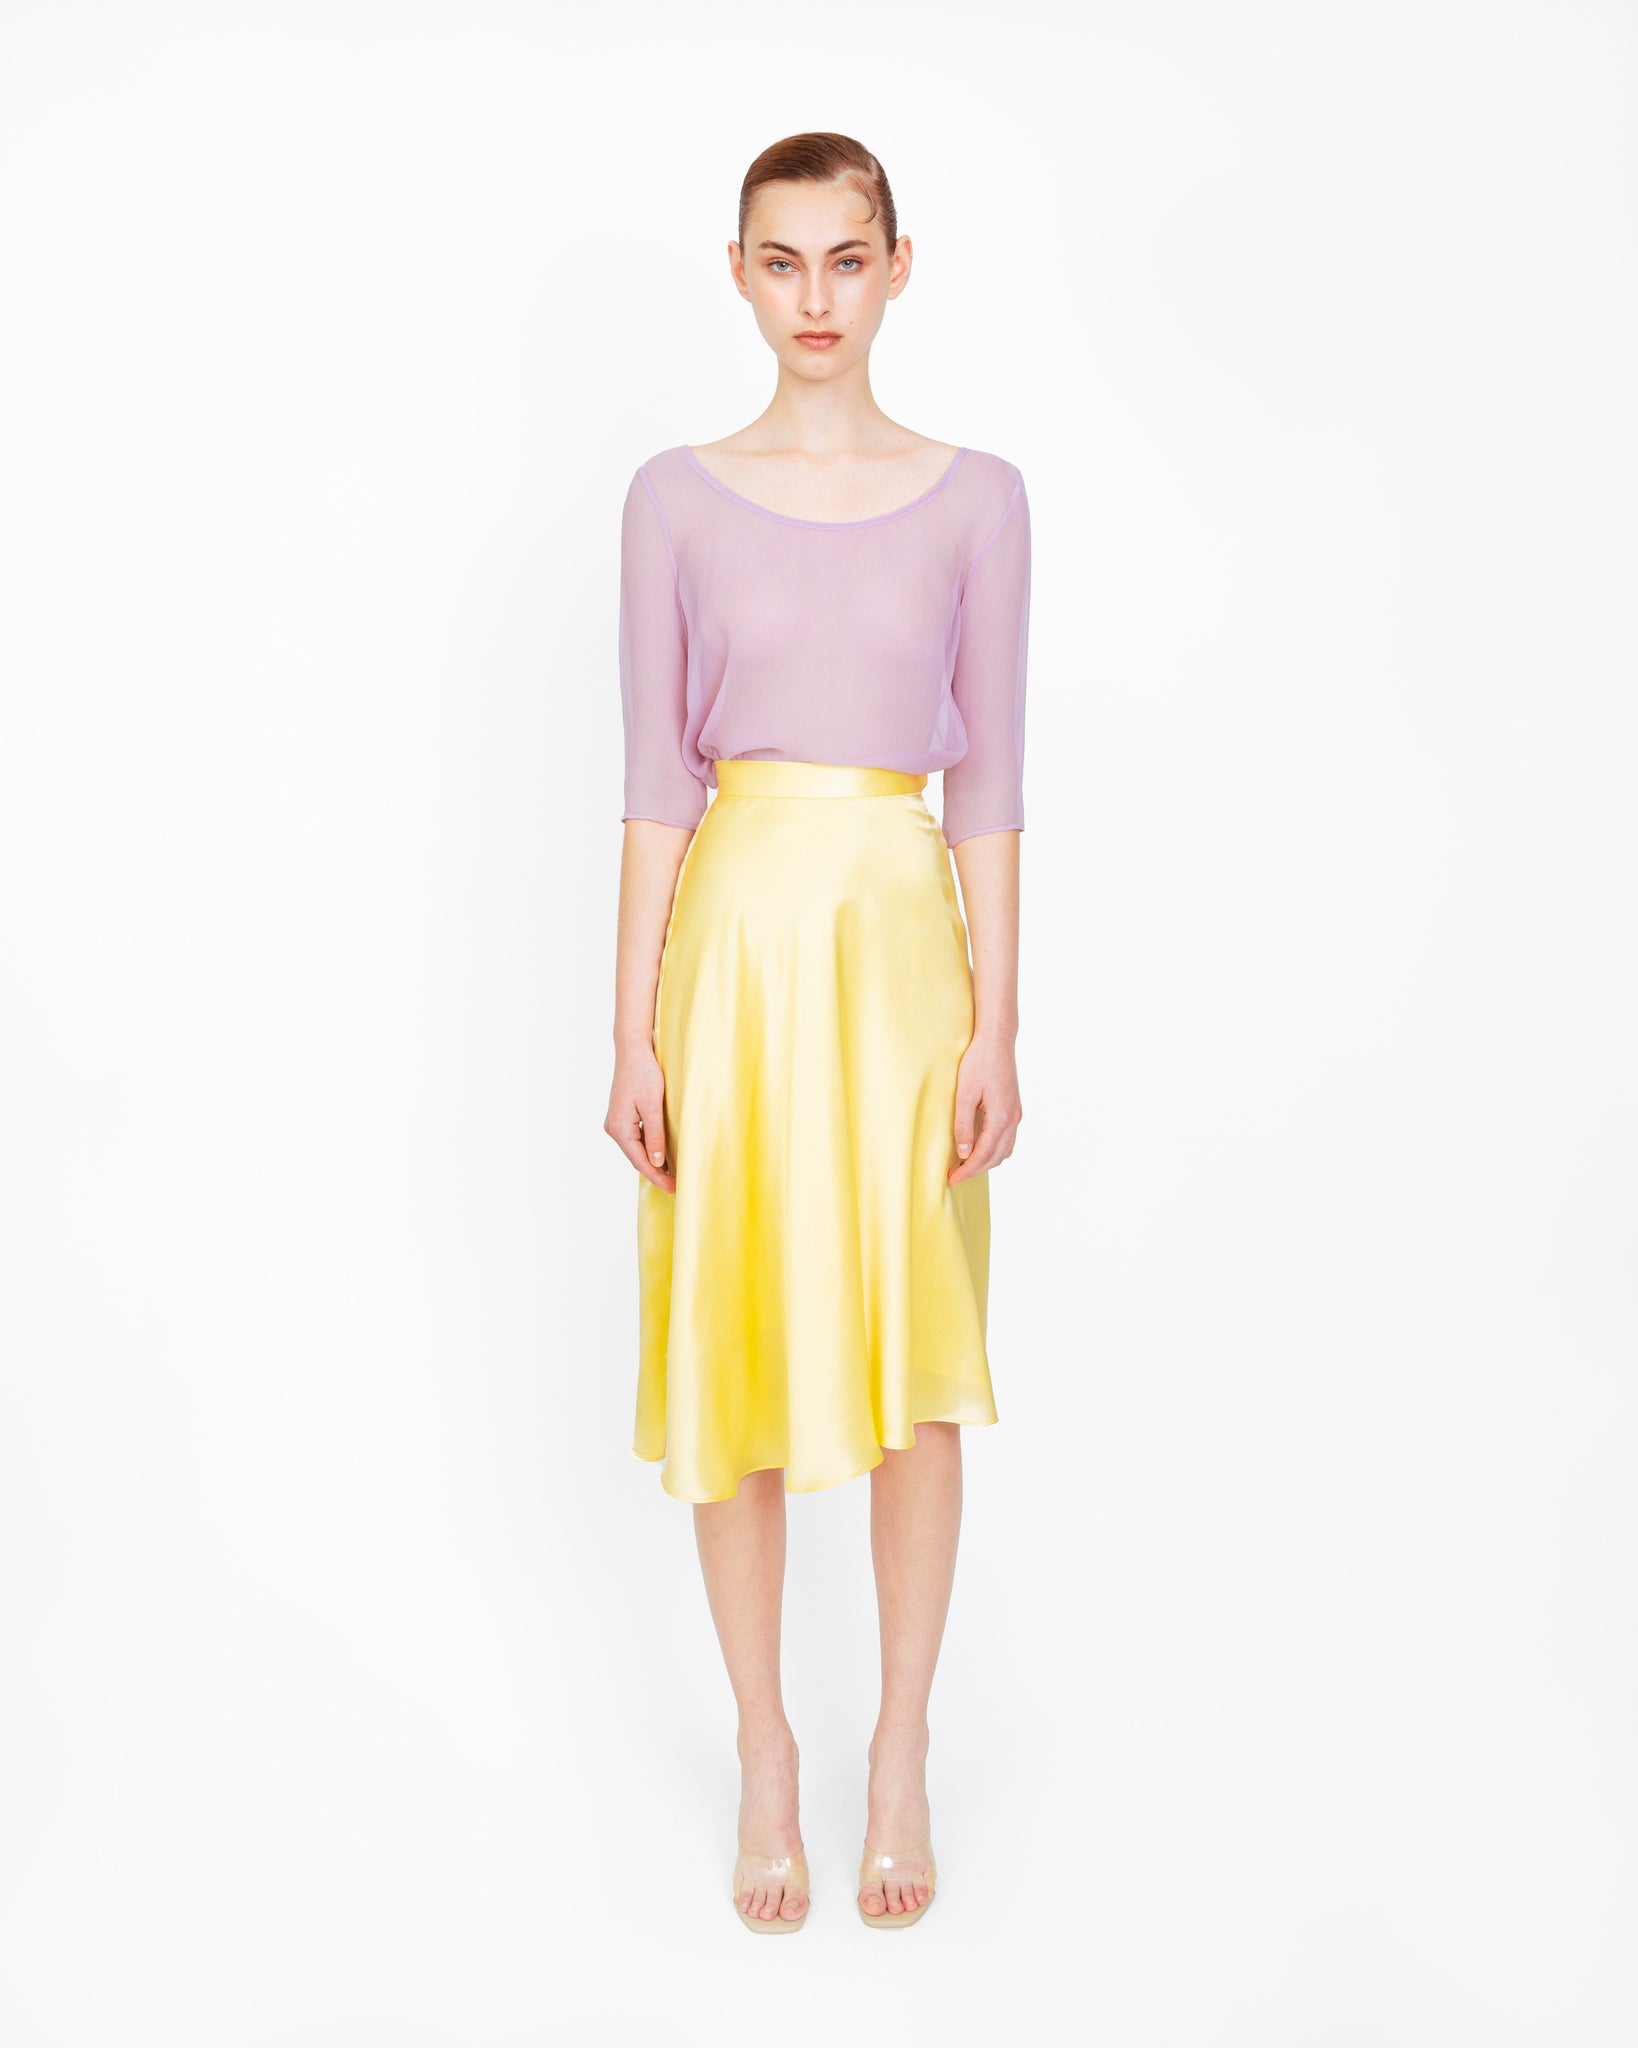 #lavendertop #chiffontop #purpletop #chiffonshirt #minimalstyle #minimalist